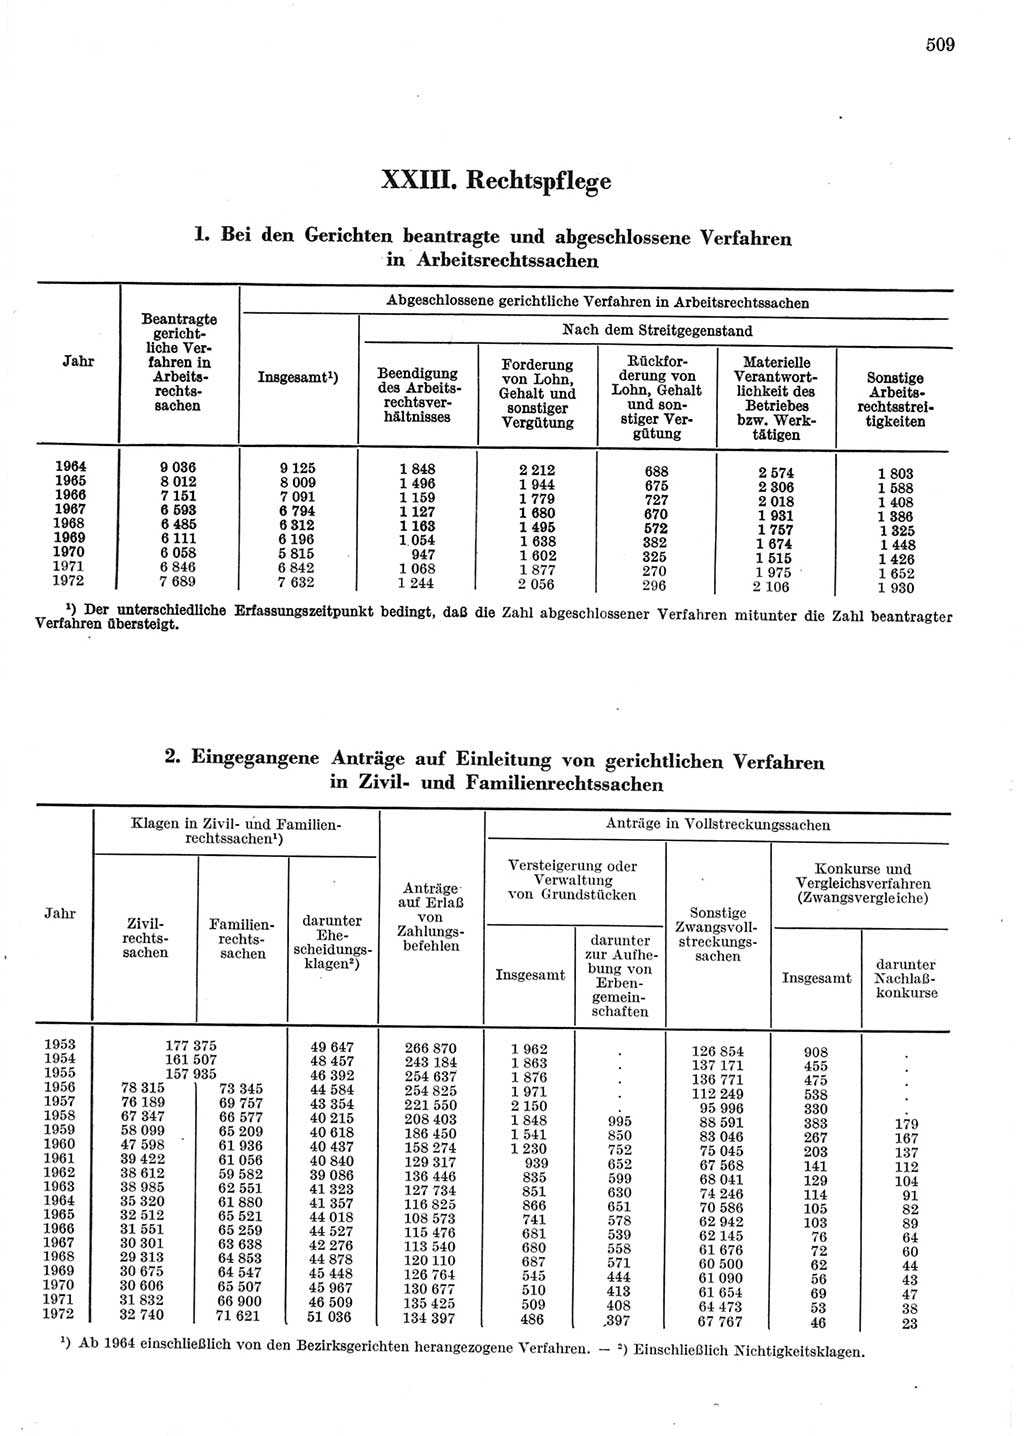 Statistisches Jahrbuch der Deutschen Demokratischen Republik (DDR) 1973, Seite 509 (Stat. Jb. DDR 1973, S. 509)